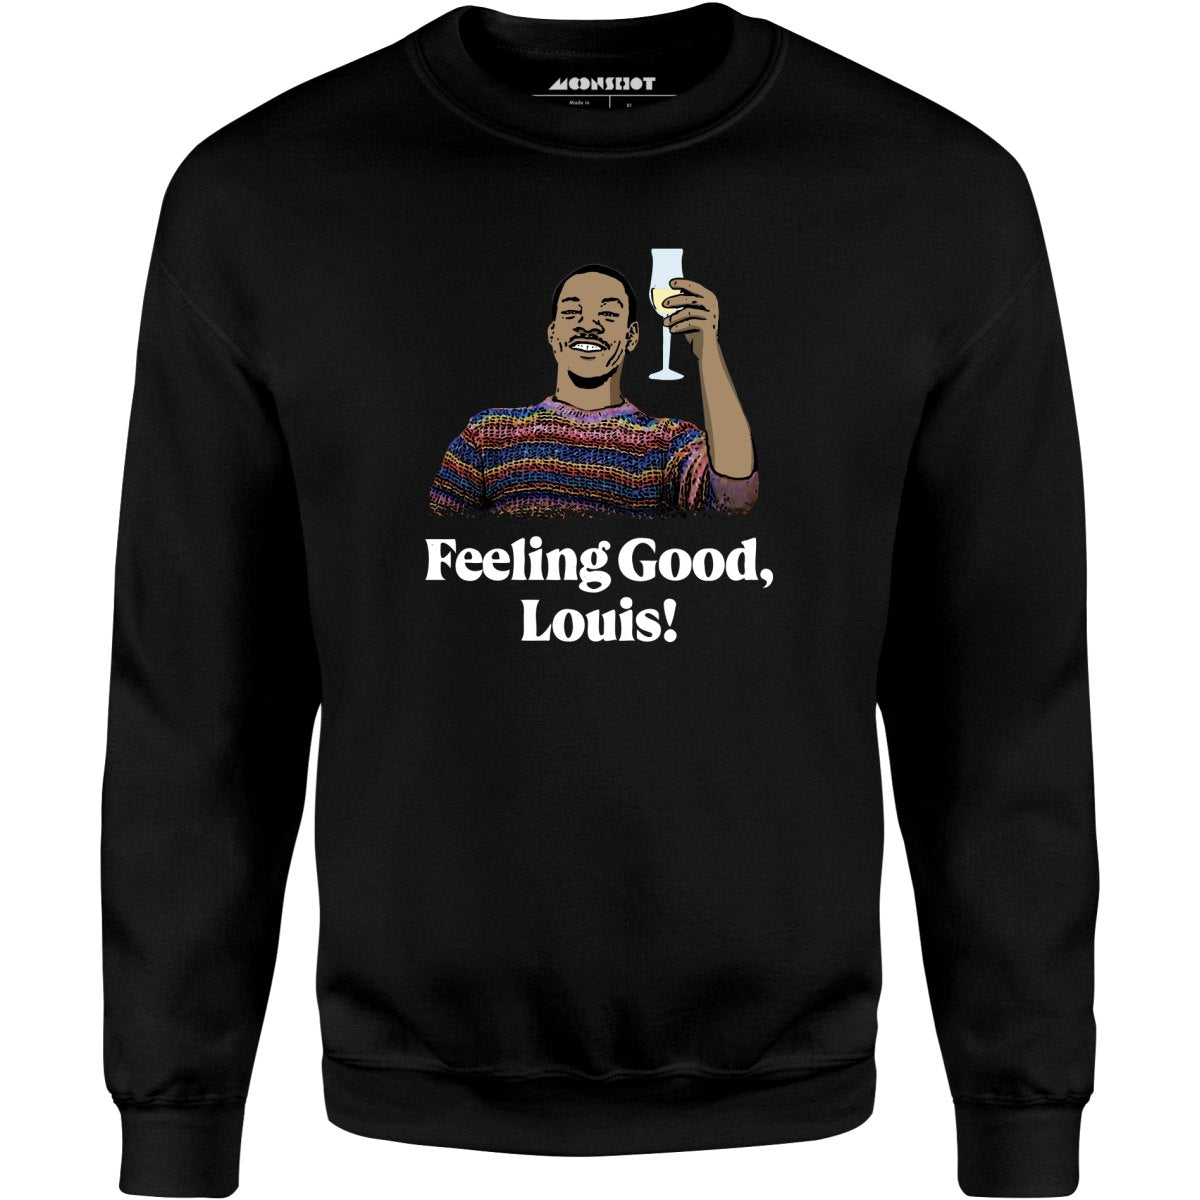 Feeling Good, Louis! - Unisex Sweatshirt